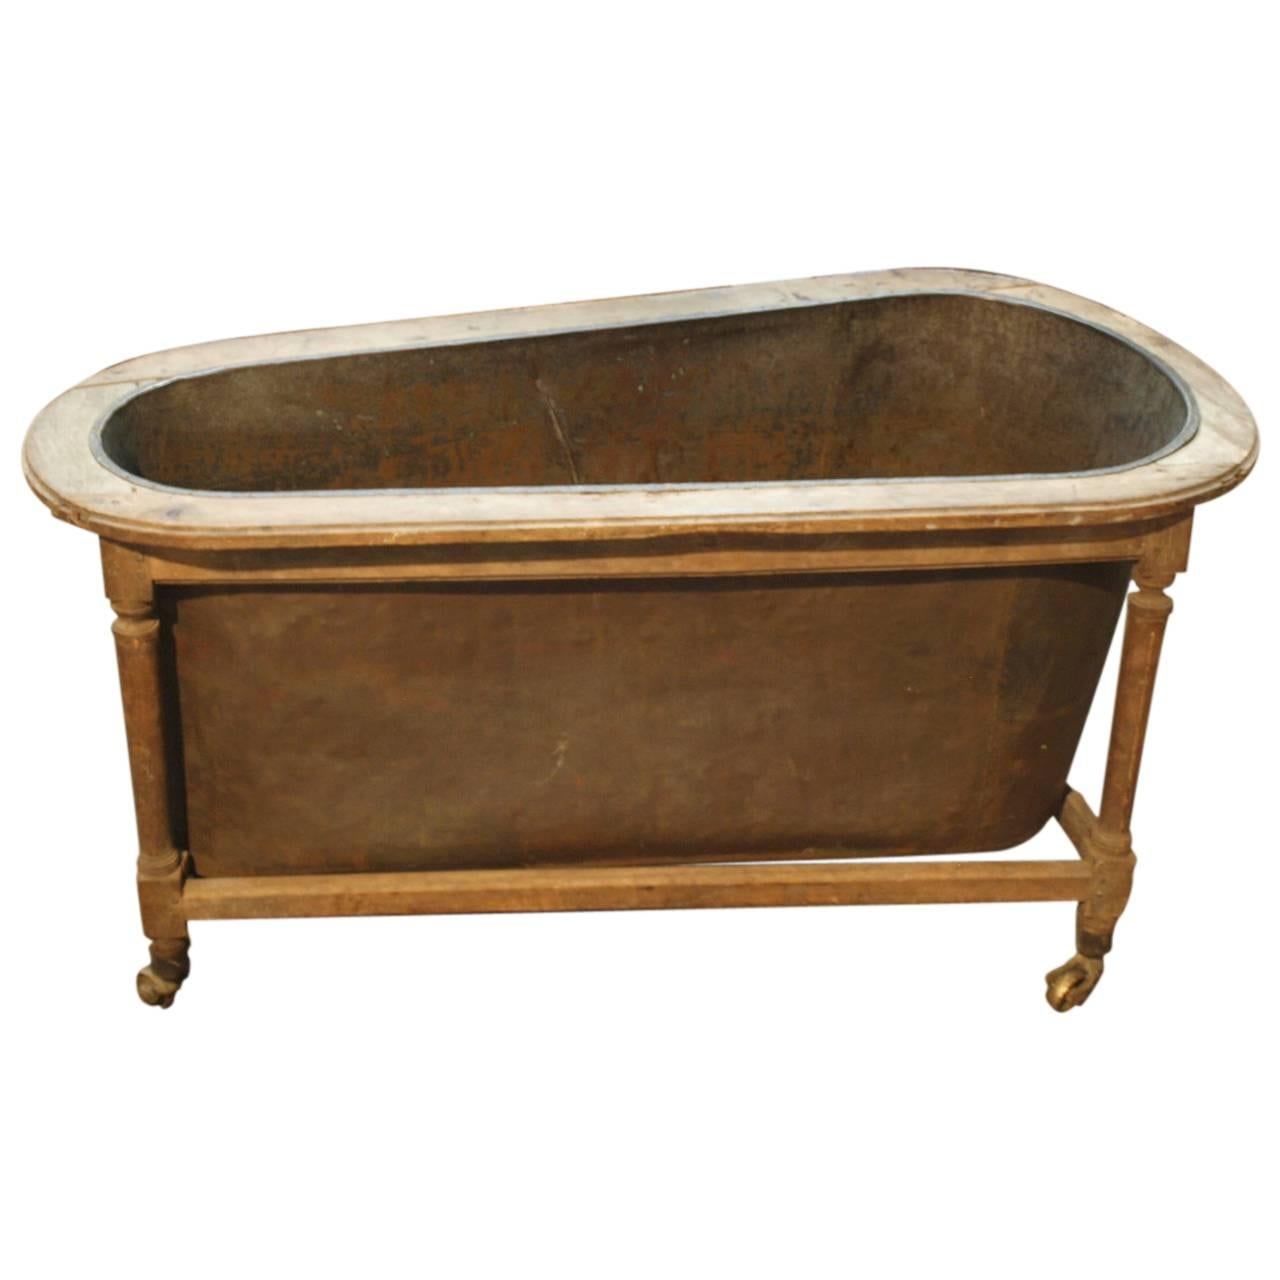 French Early 19th Century Copper Bathtub in Rolling Walnut Frame